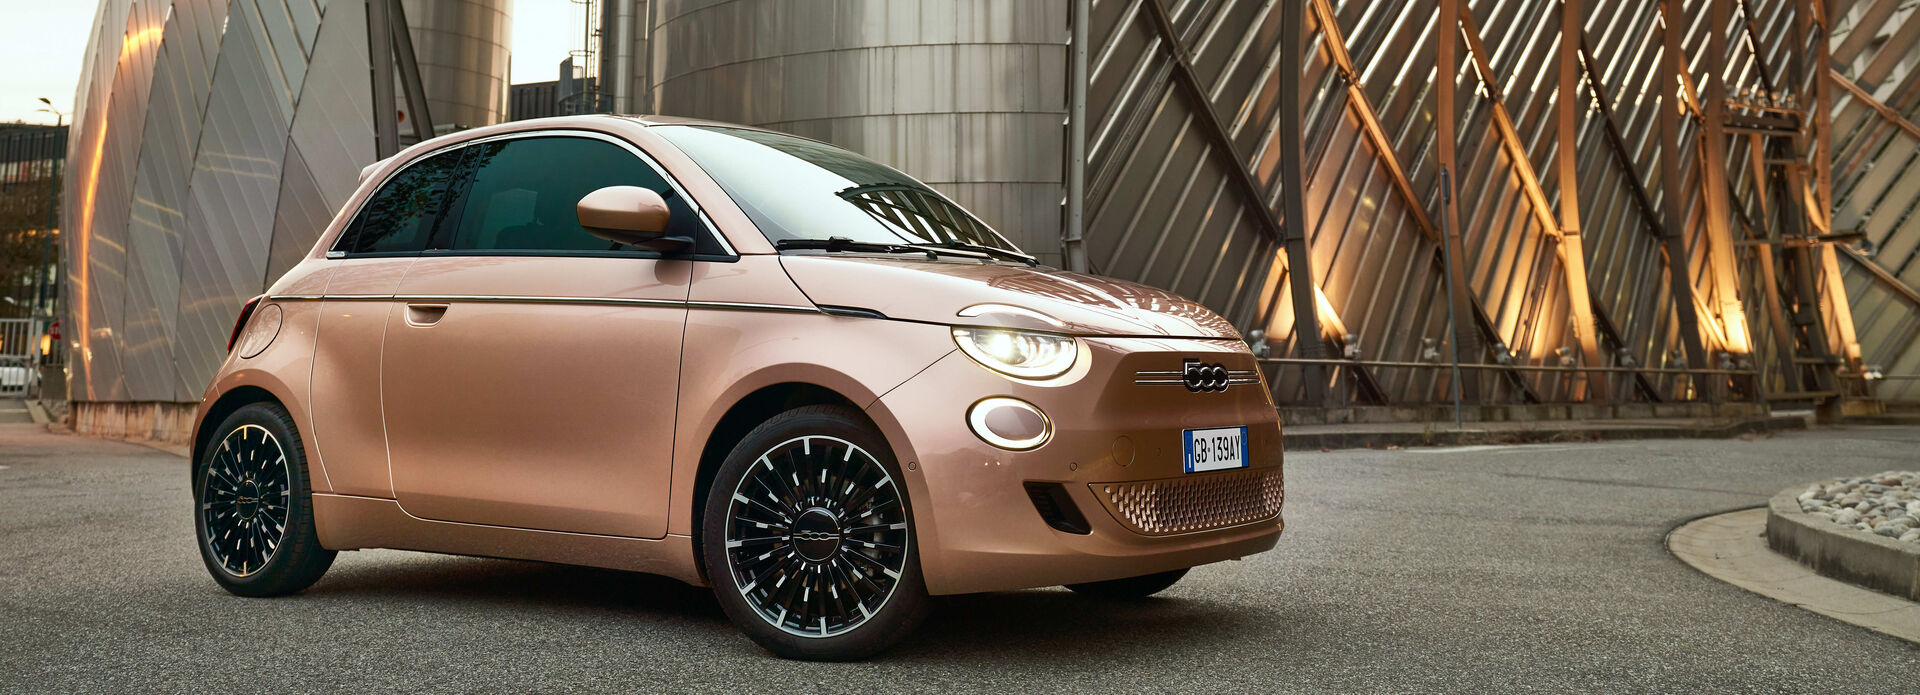 Fiat 500 Kaufberatung: Der perfekte Cinque für Sie